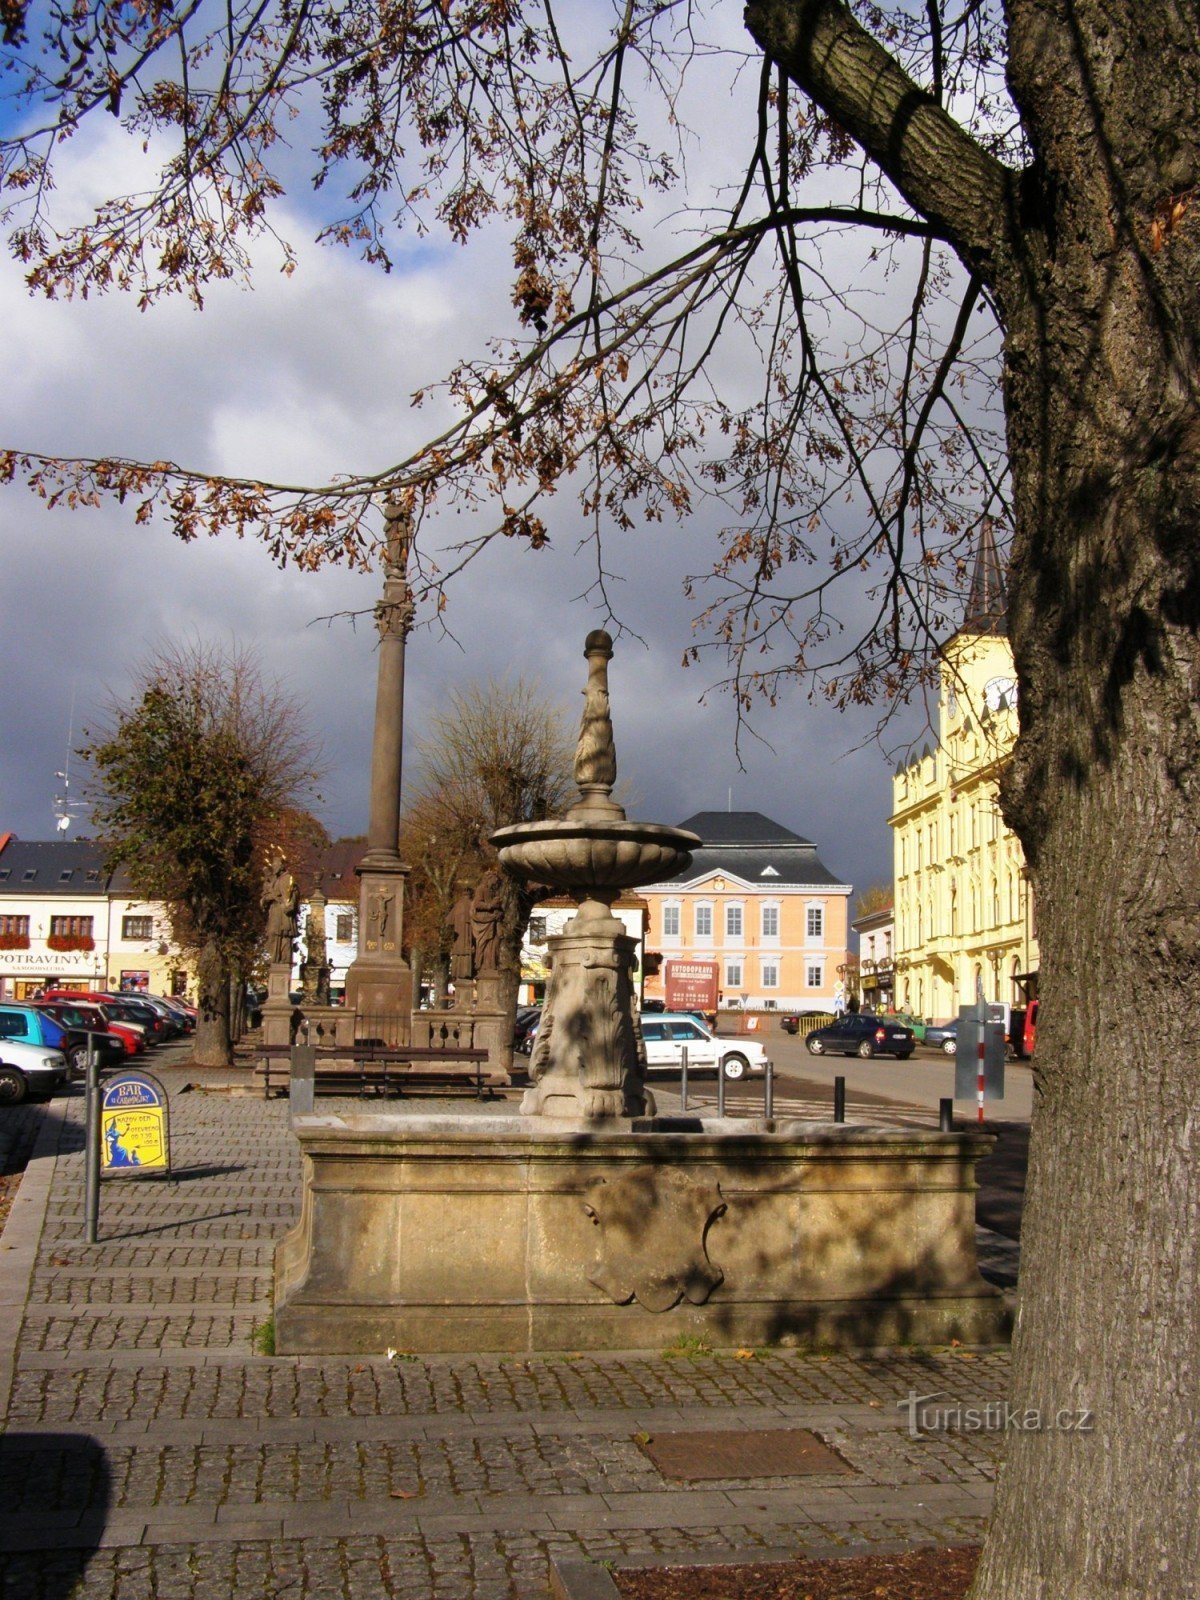 Lomnice nad Popelkou - fontes na praça Hus